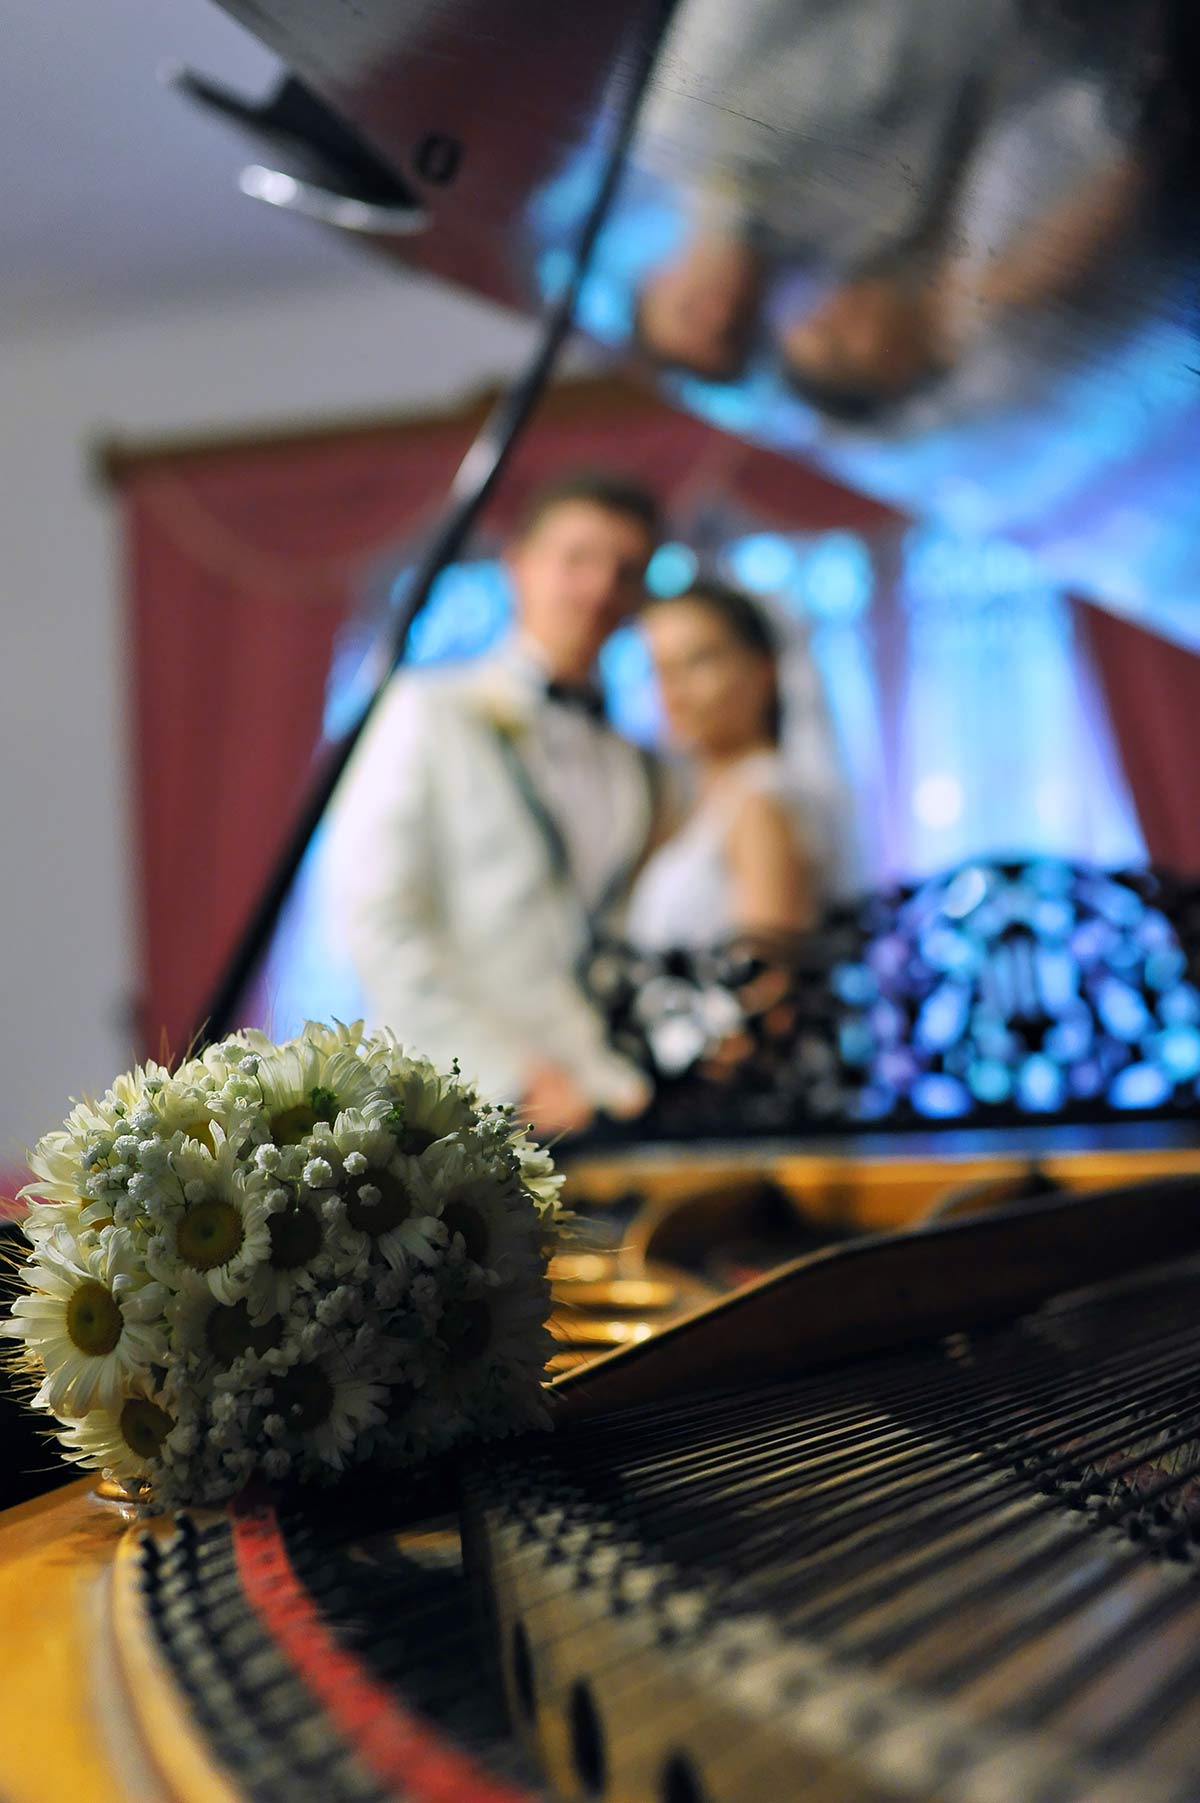 Servicii foto-video in Targu Neamt | Fotografie si filmare video de nunta in Targu Neamt | Nunta la Casa Arcasului | Sedinta foto la Cetatea Neamtului